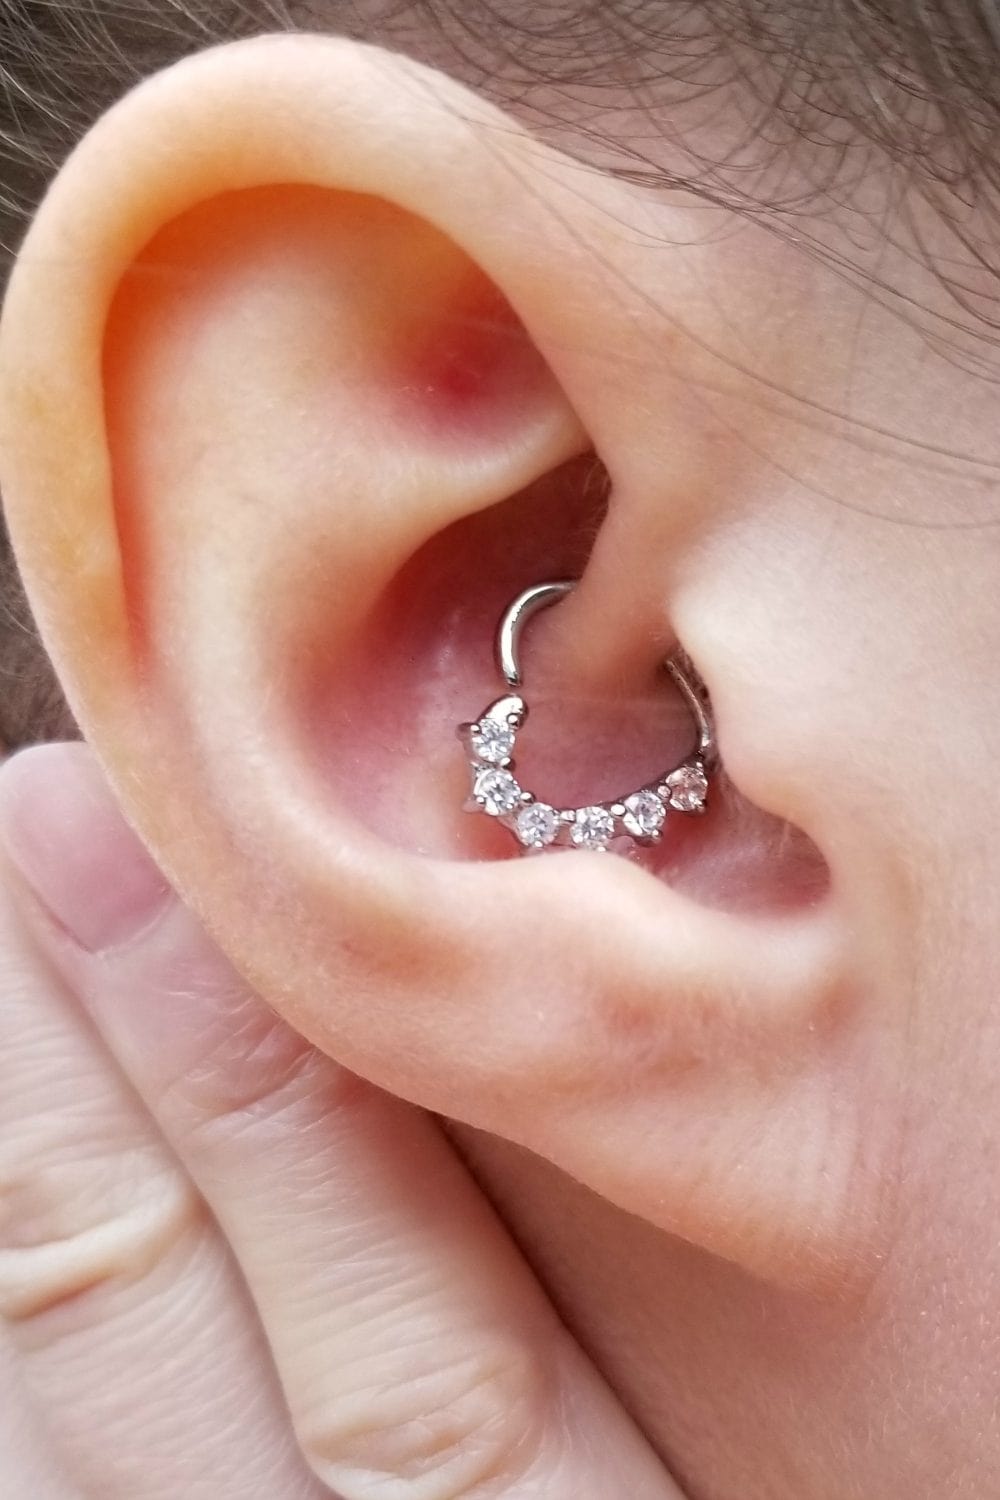 Ear with a heart-shaped daith earring.